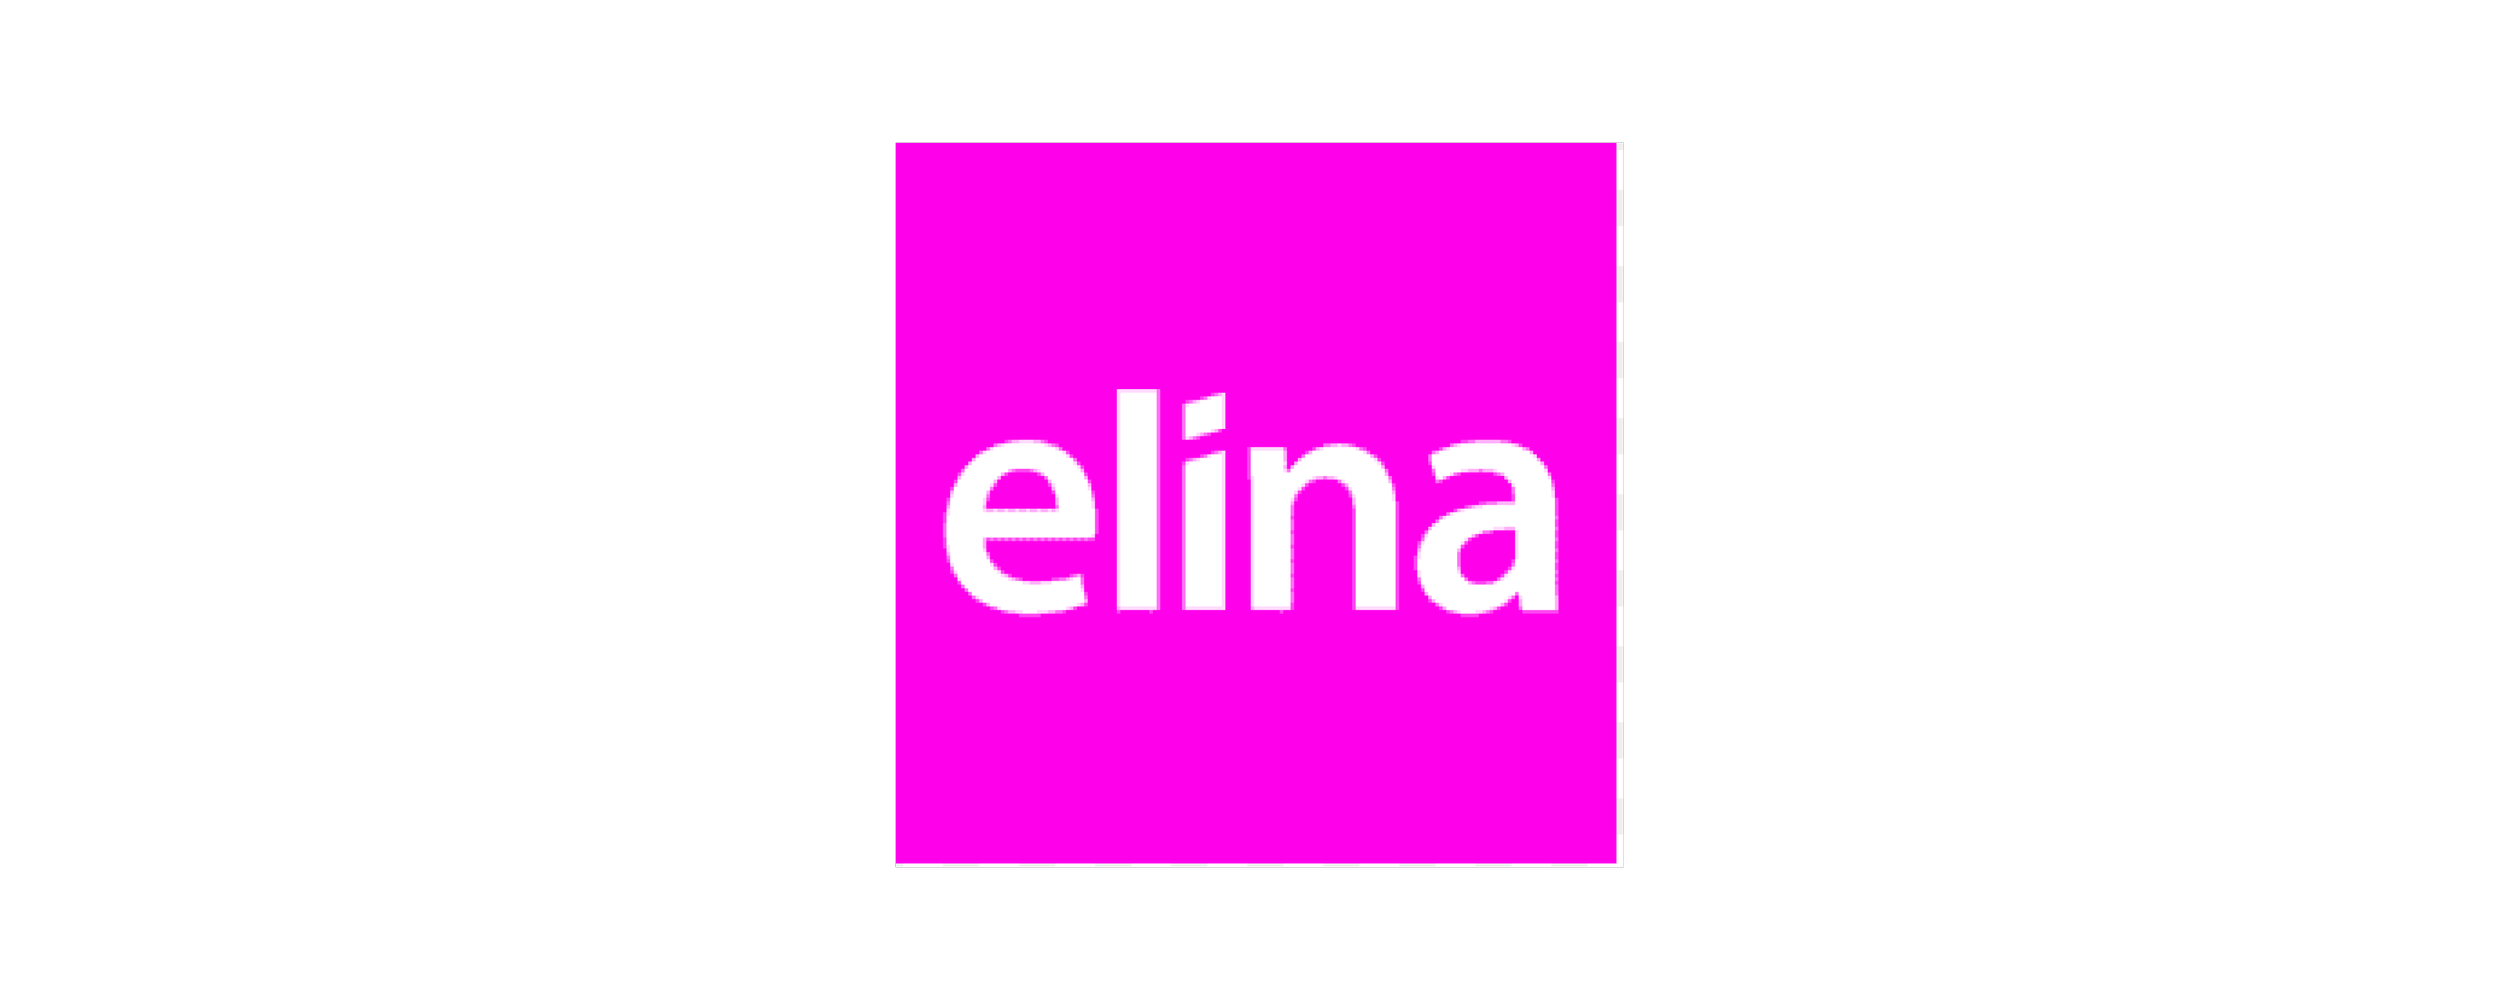 Elina - SoS.png